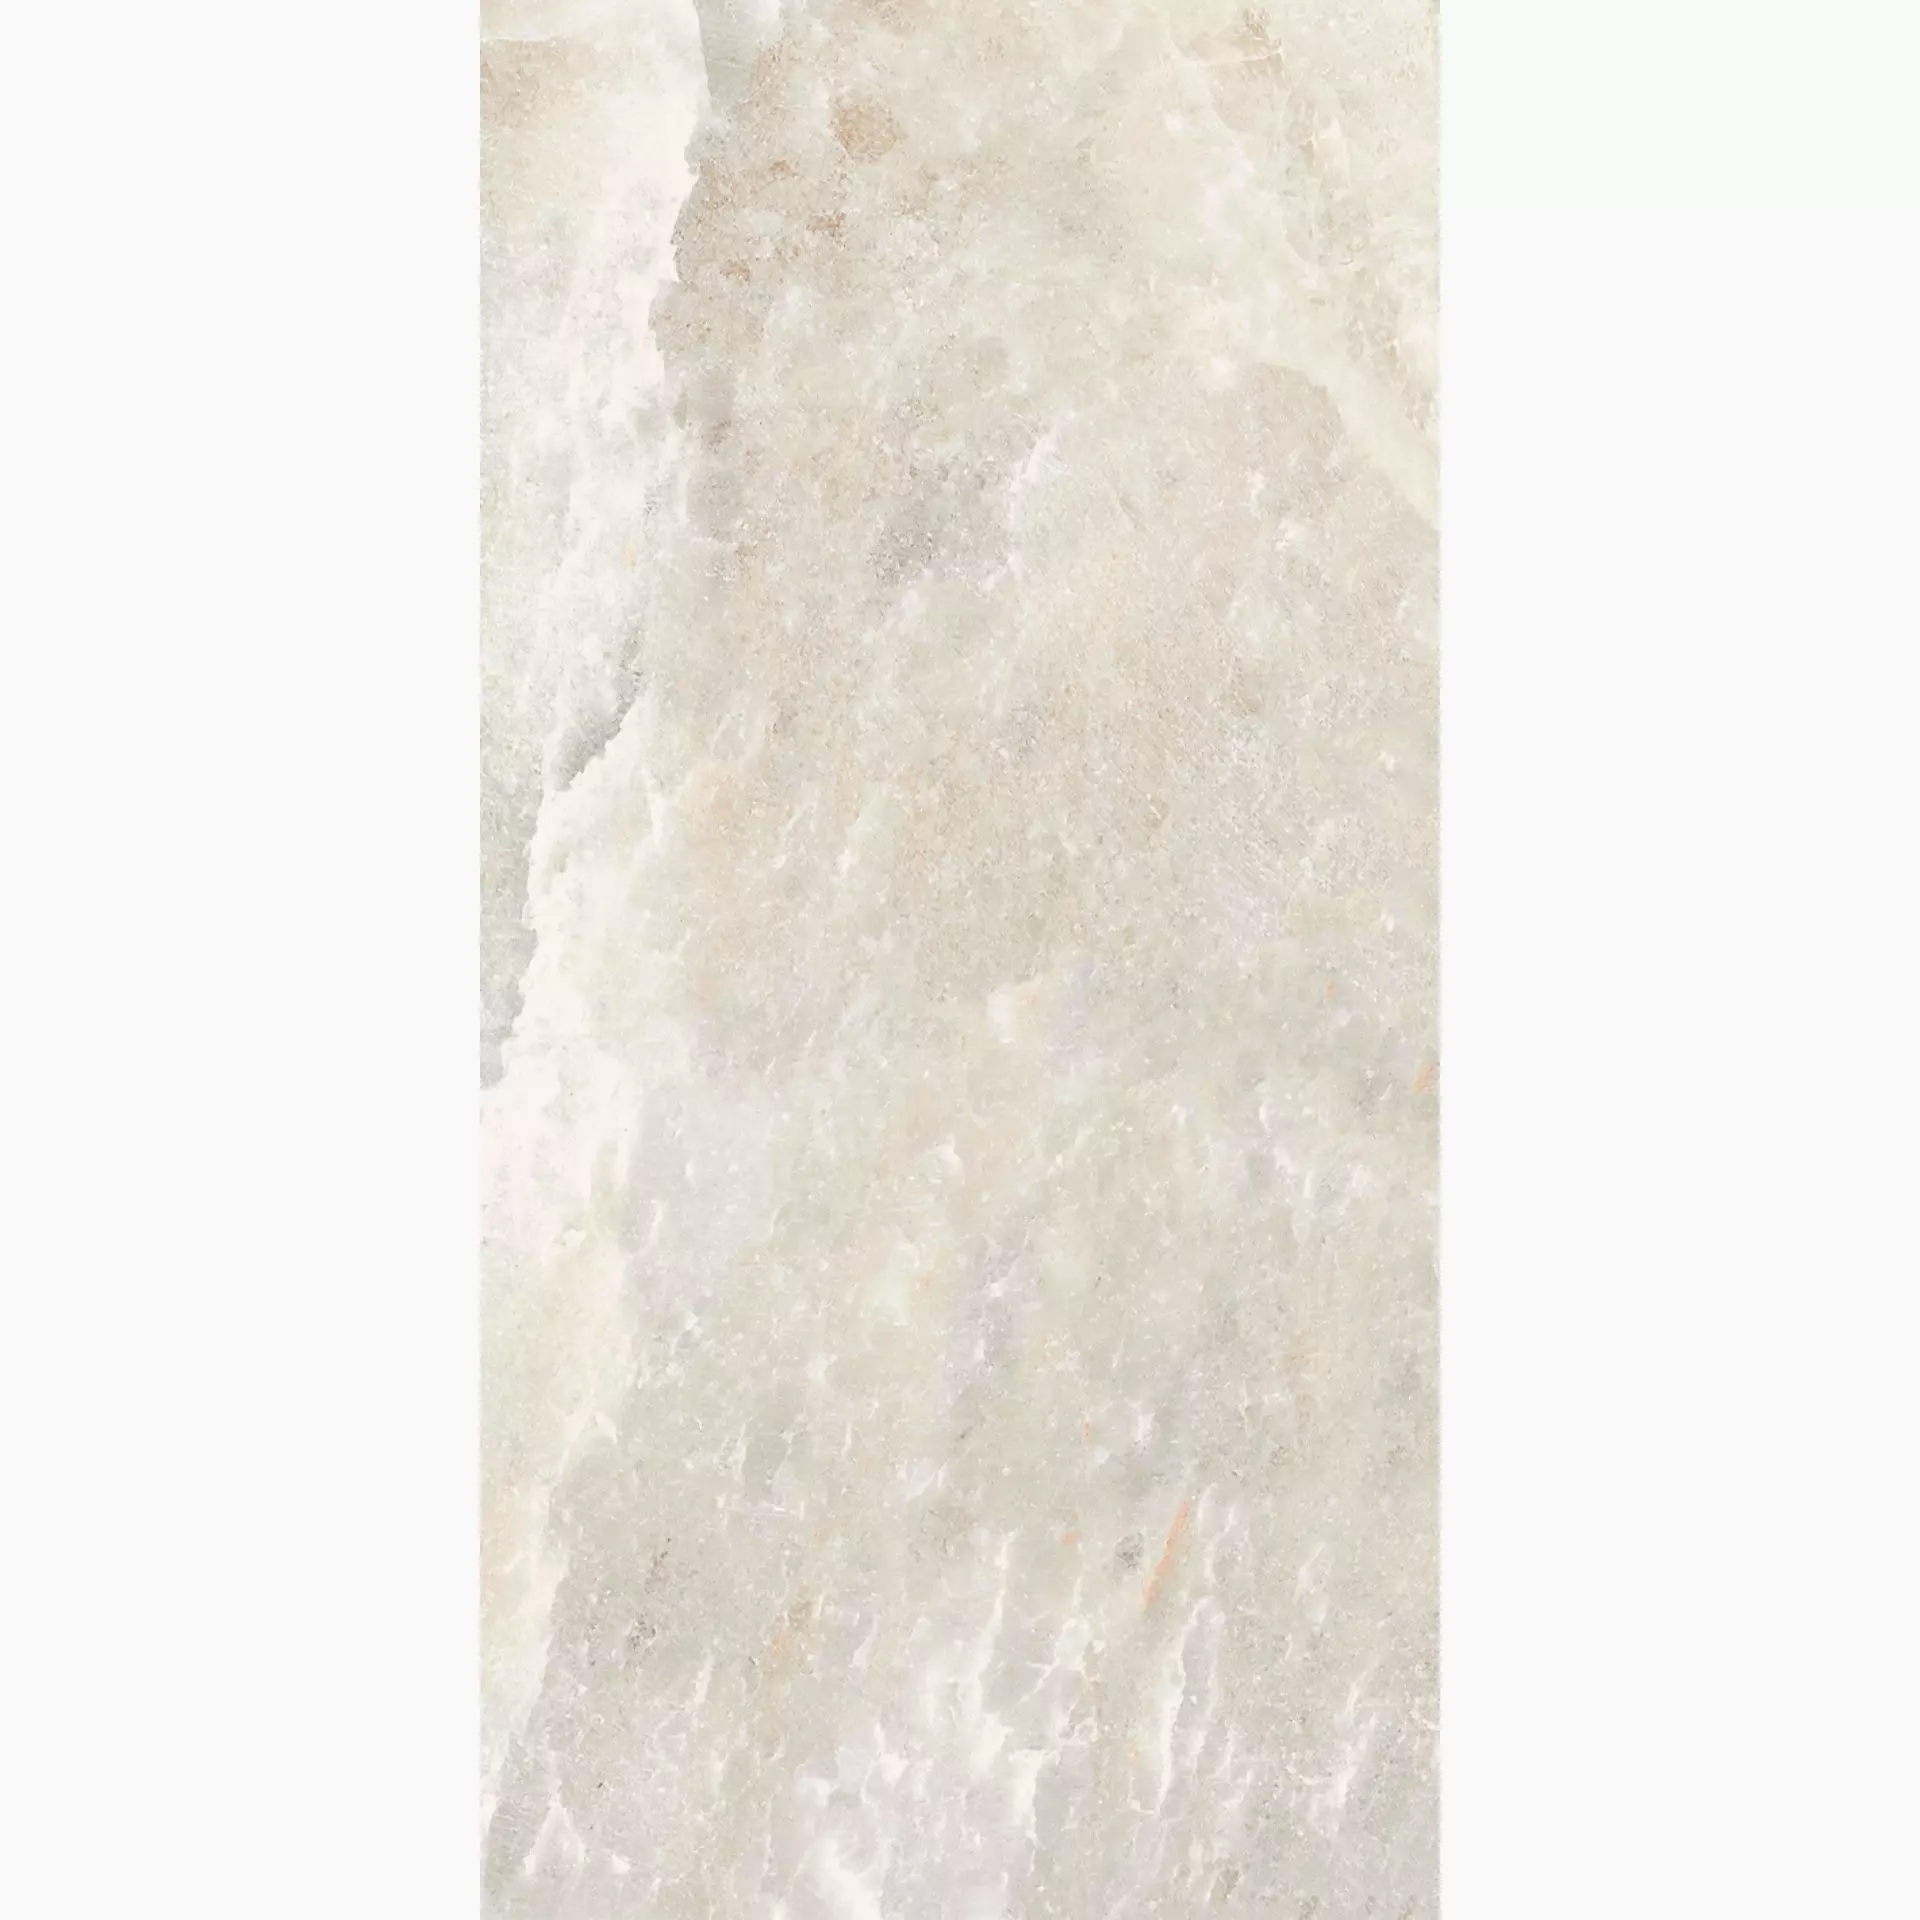 Florim Rock Salt White Gold Naturale – Matt 766929 60x120cm rectified 6mm